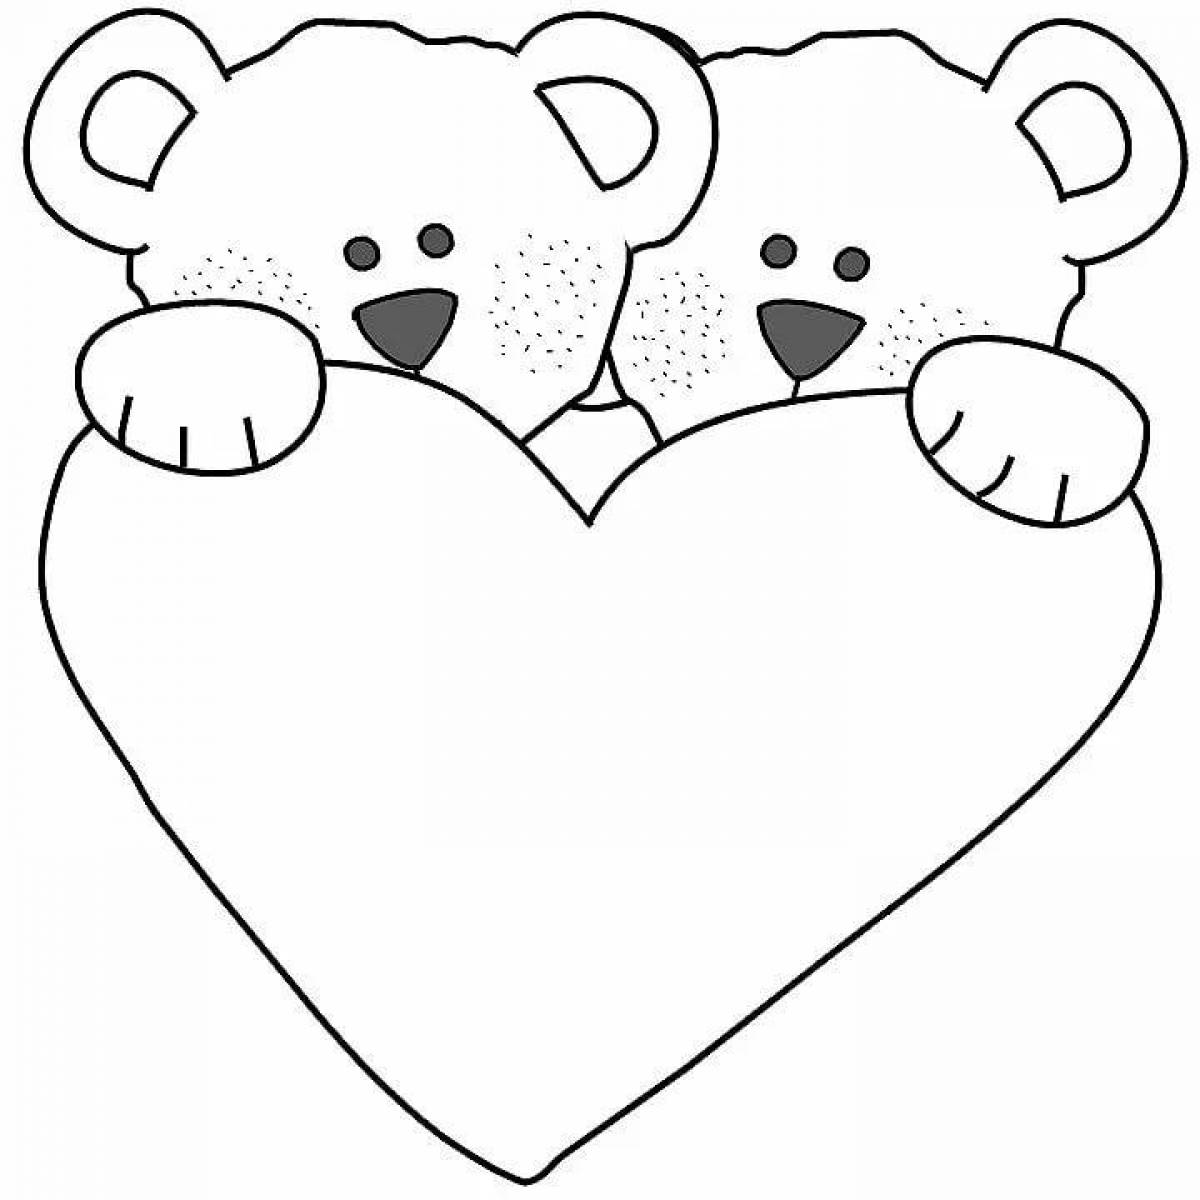 Joyful teddy bear with a heart coloring